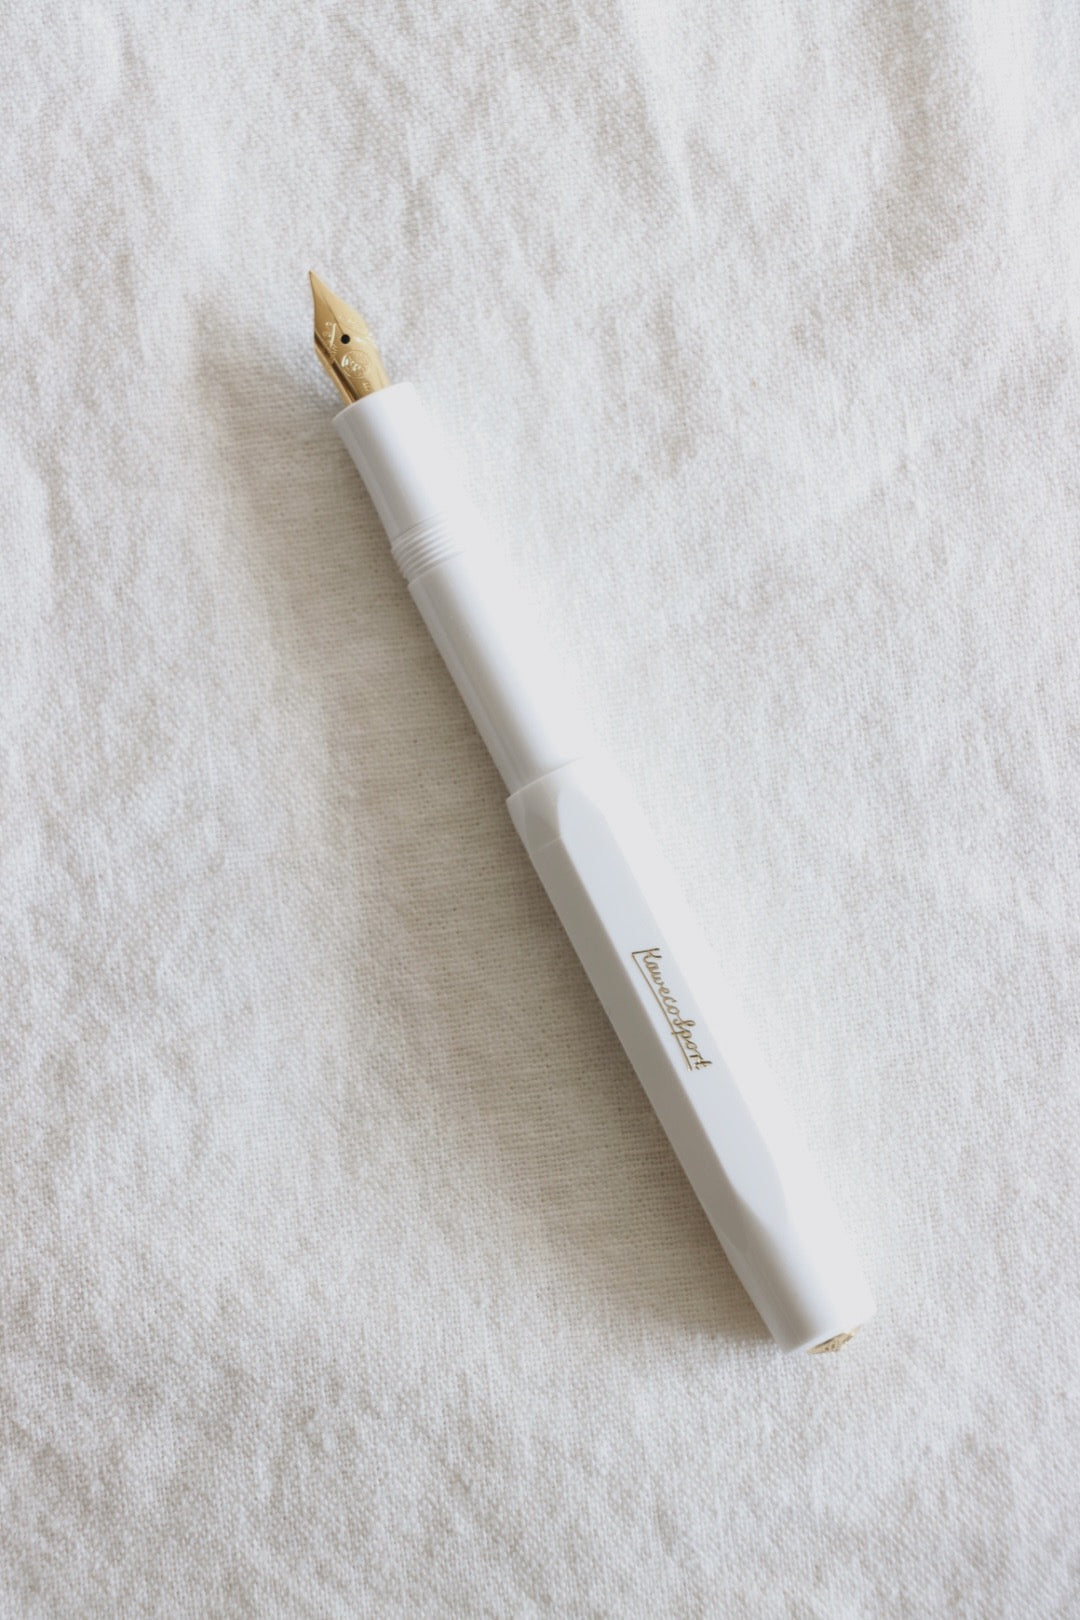 Kaweco Sport Fountain Pen, White